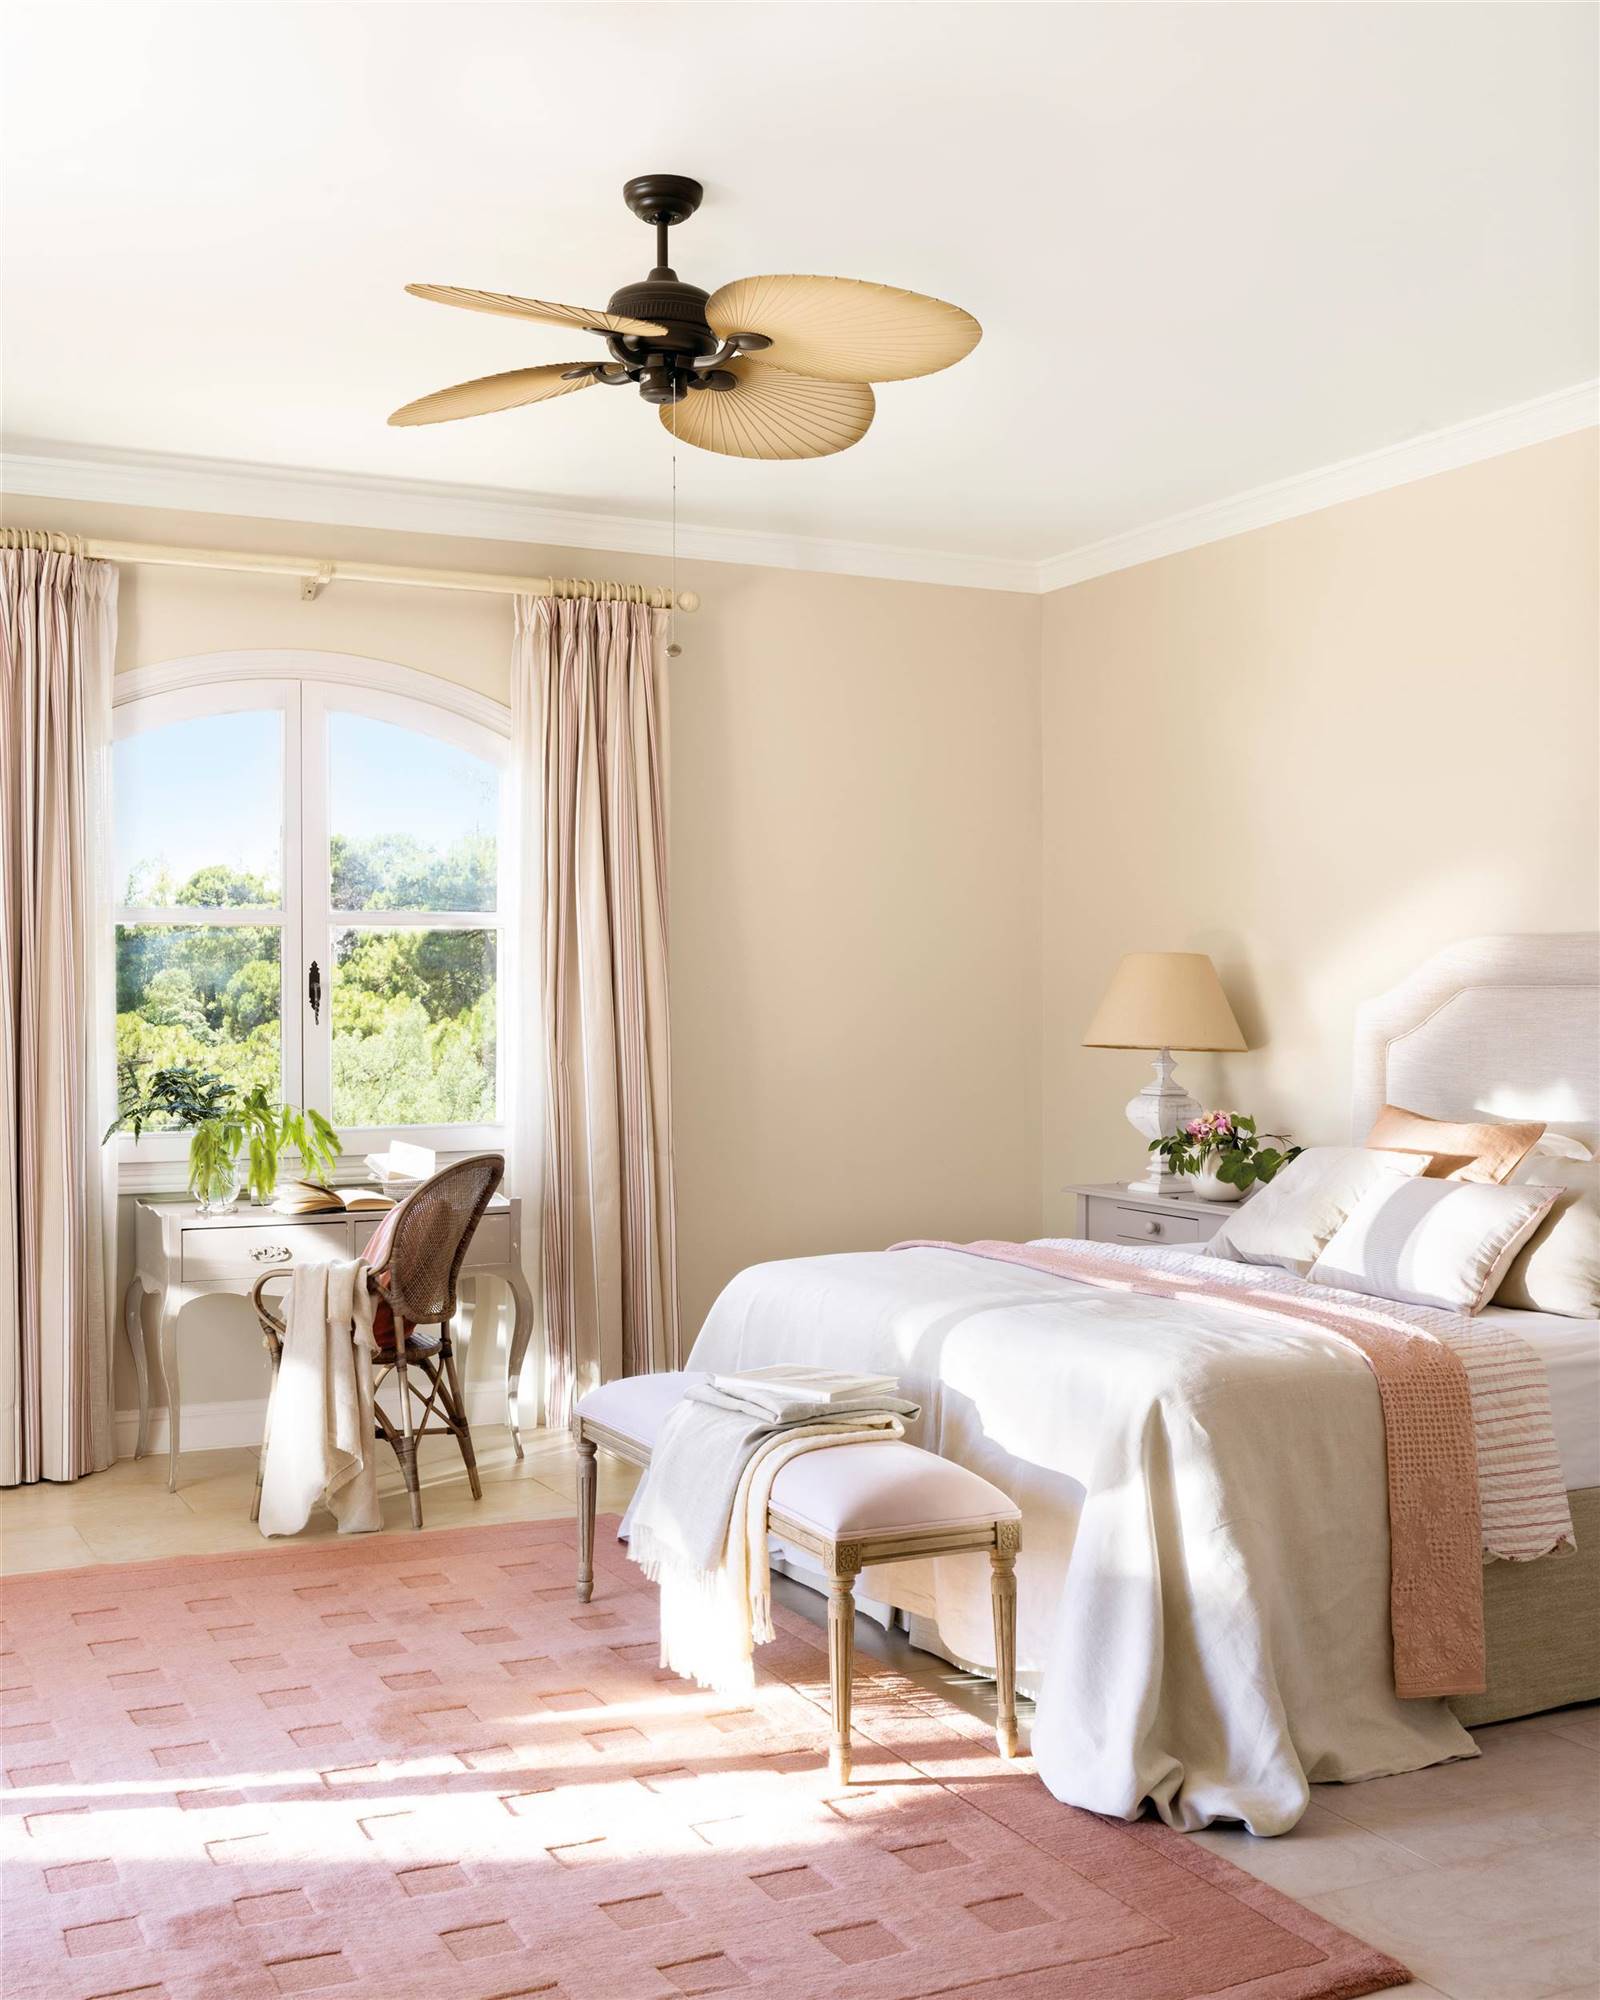 Dormitorio clásico con cabecero tapizado, alfombra salmón y ventilador de techo.